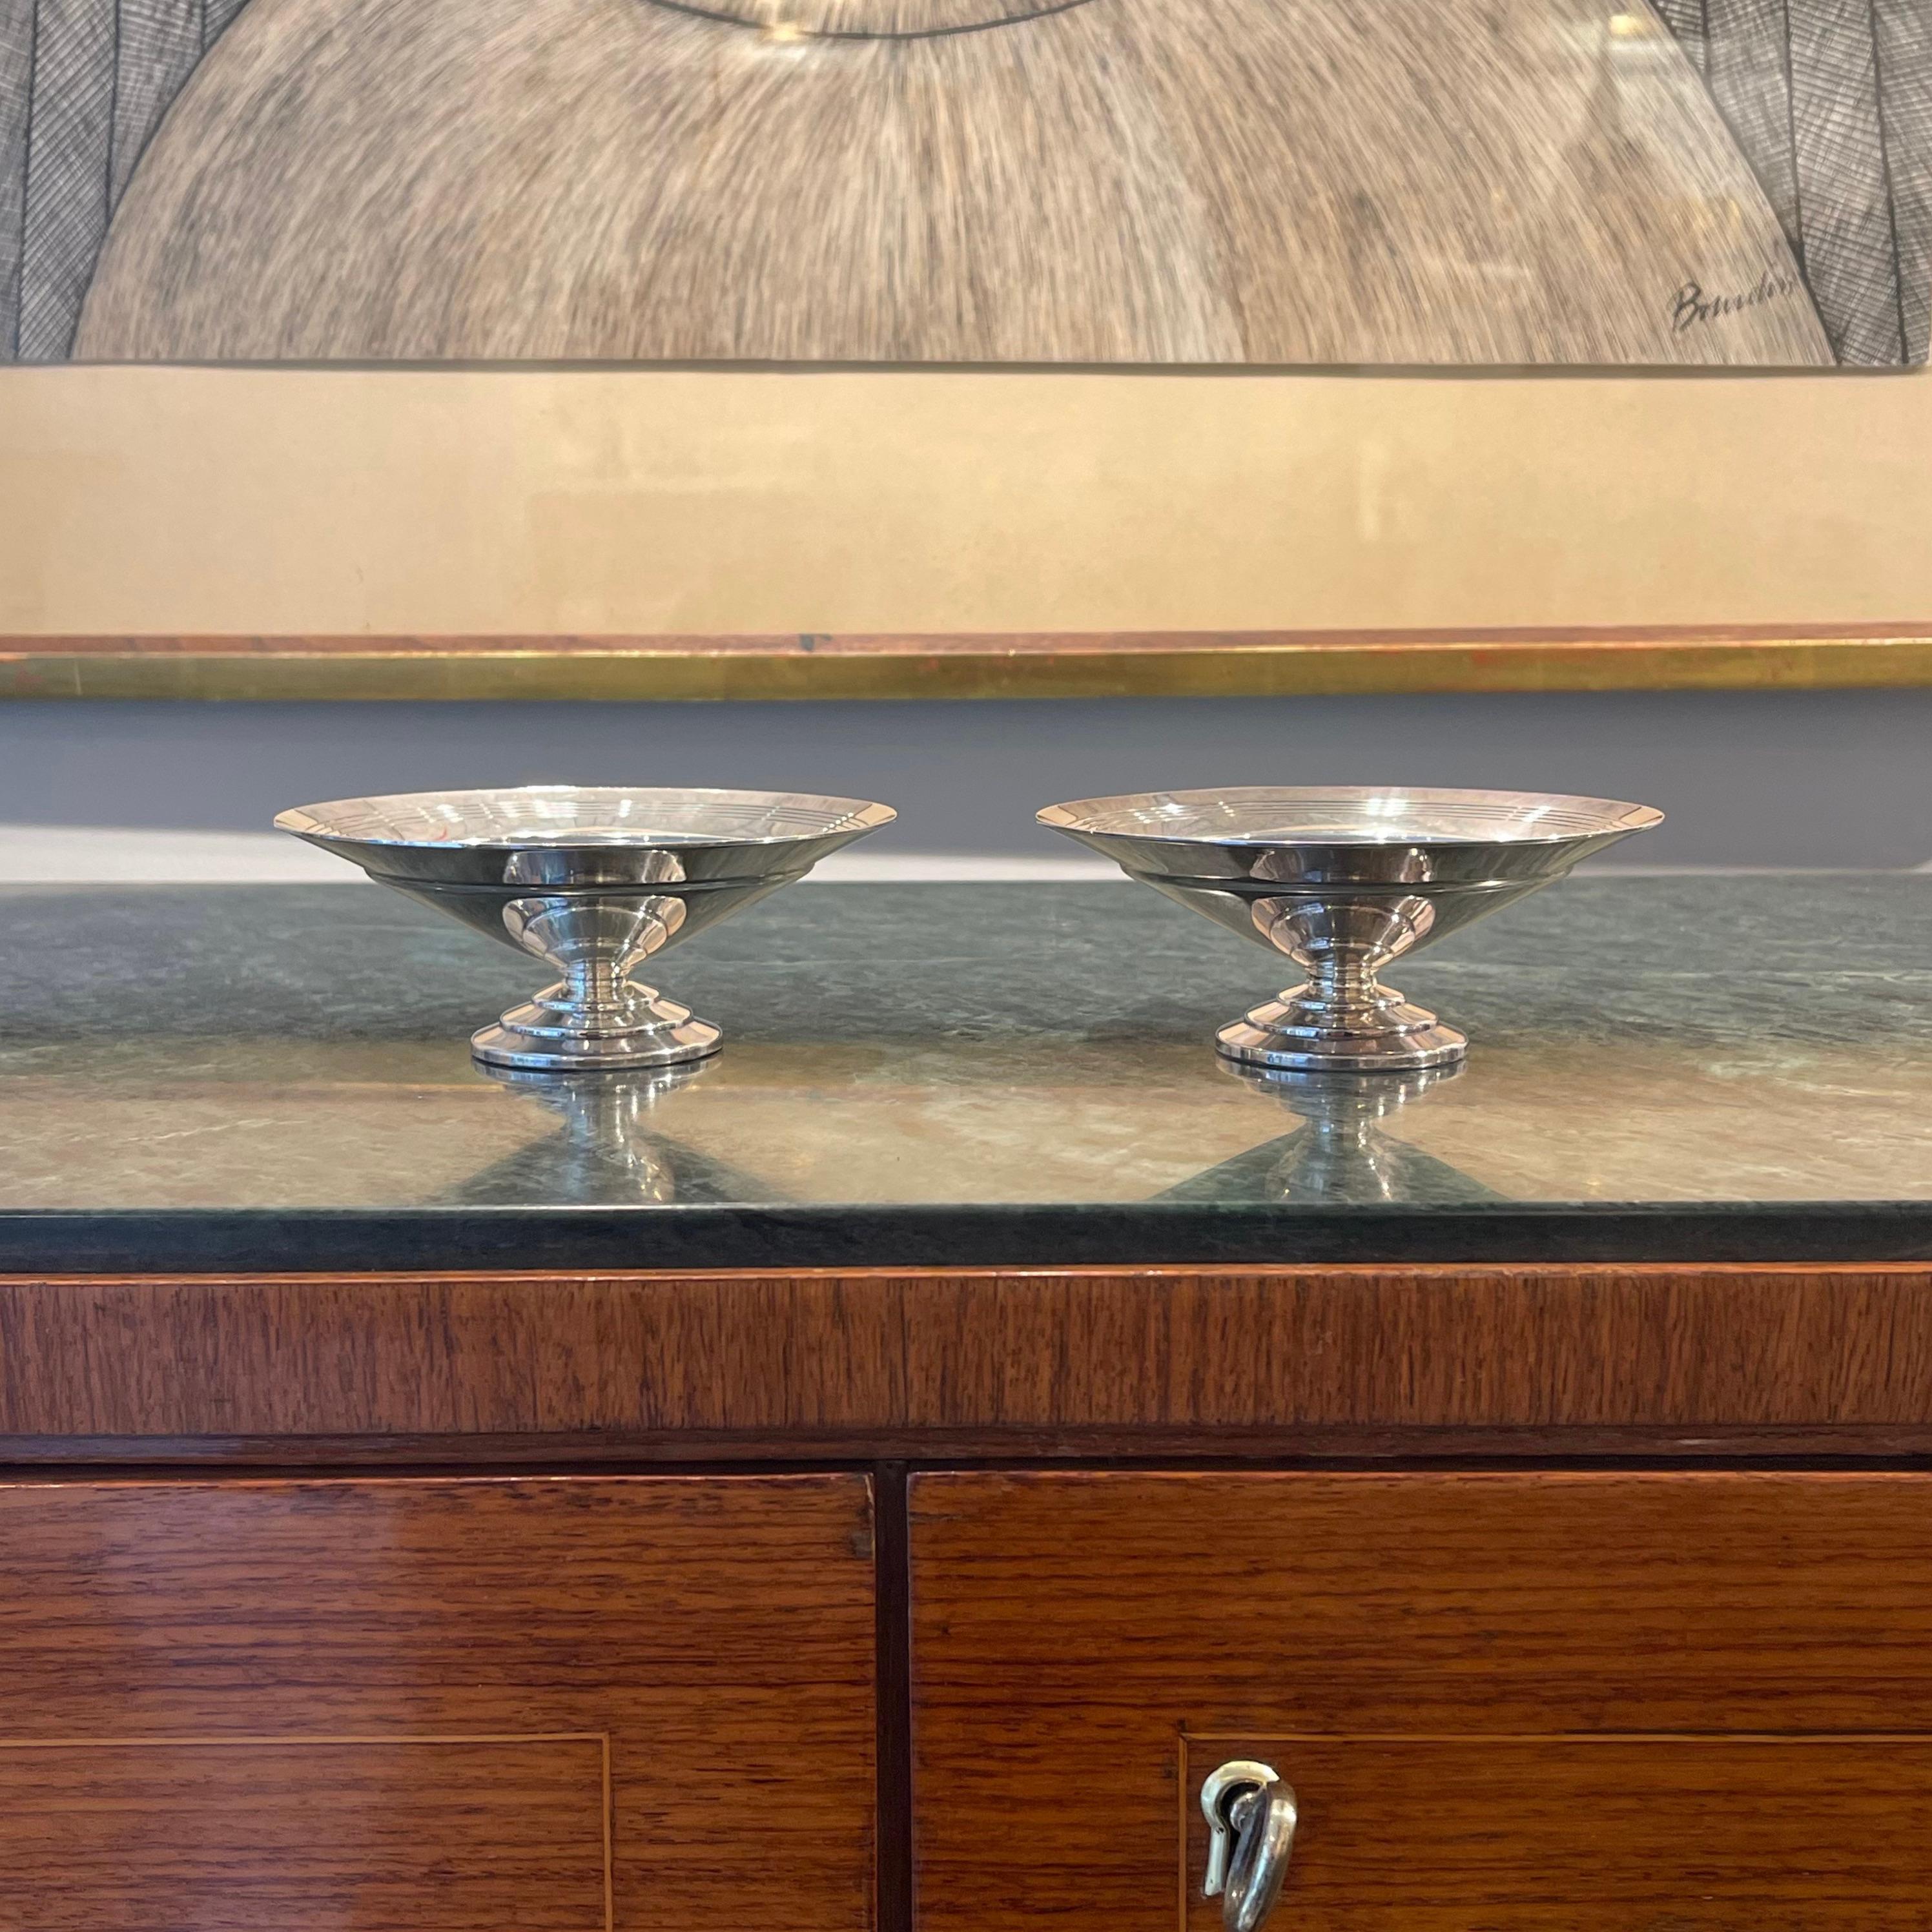 Ces deux petits plats du designer britannique Keith Murray pour Mappin & Webb datent des années 1930 et illustrent le style Art déco de l'époque. Dans chaque pièce, la forme conique étagée de la base est inversée et équilibrée par le plat plus grand